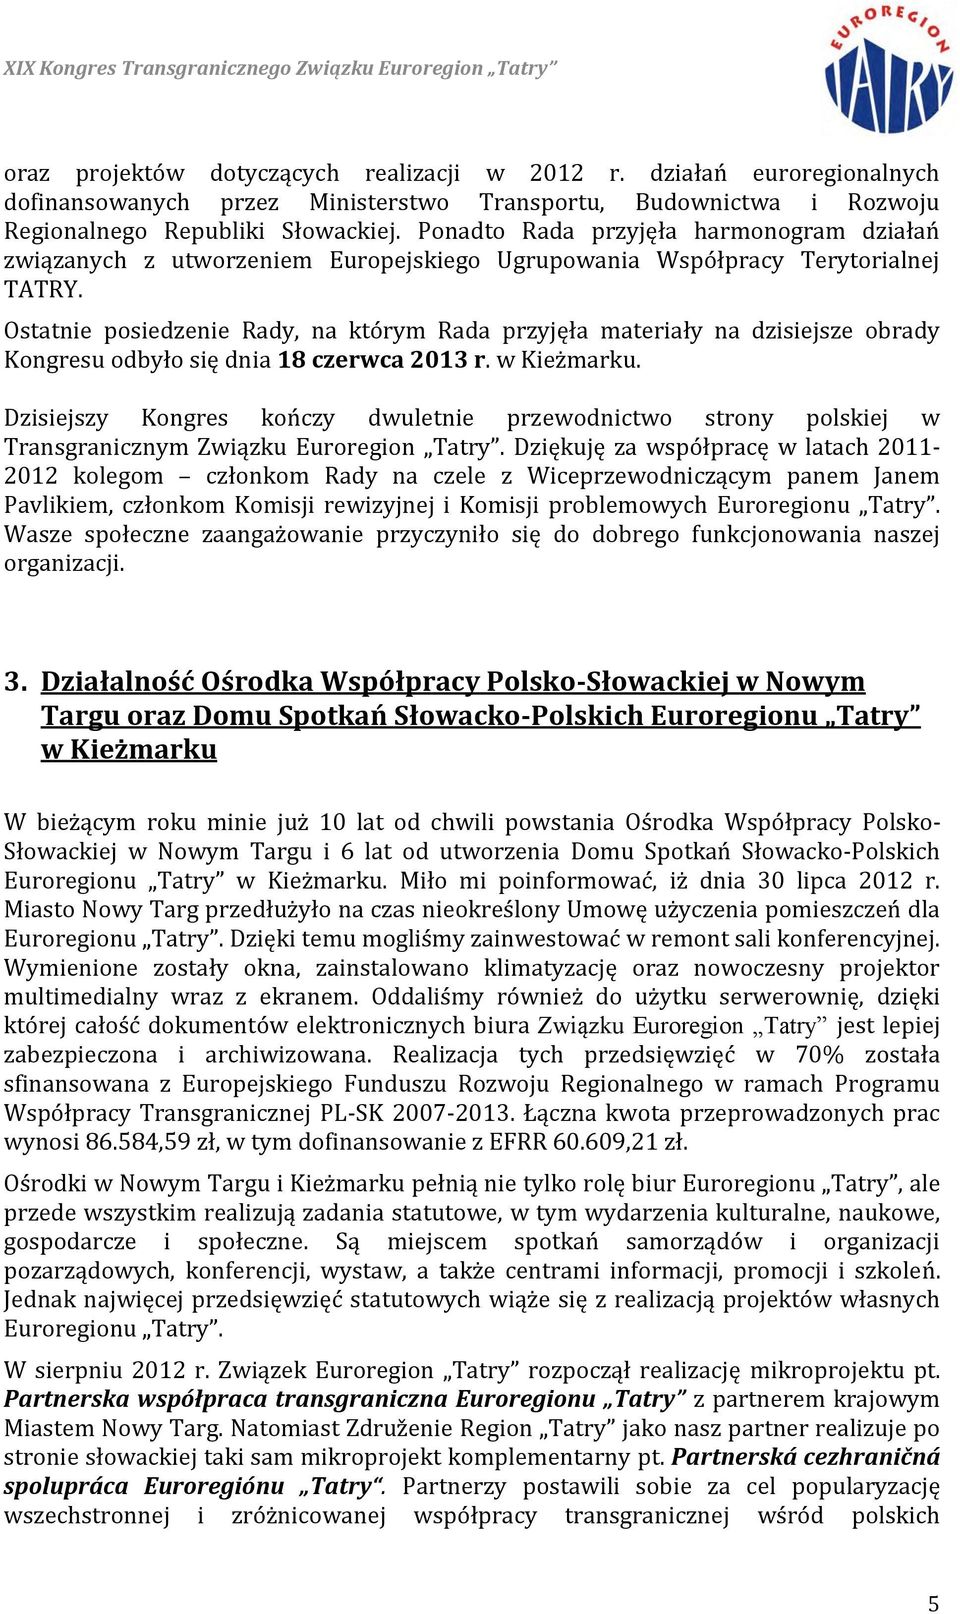 Ostatnie posiedzenie Rady, na którym Rada przyjęła materiały na dzisiejsze obrady Kongresu odbyło się dnia 18 czerwca 2013 r. w Kieżmarku.